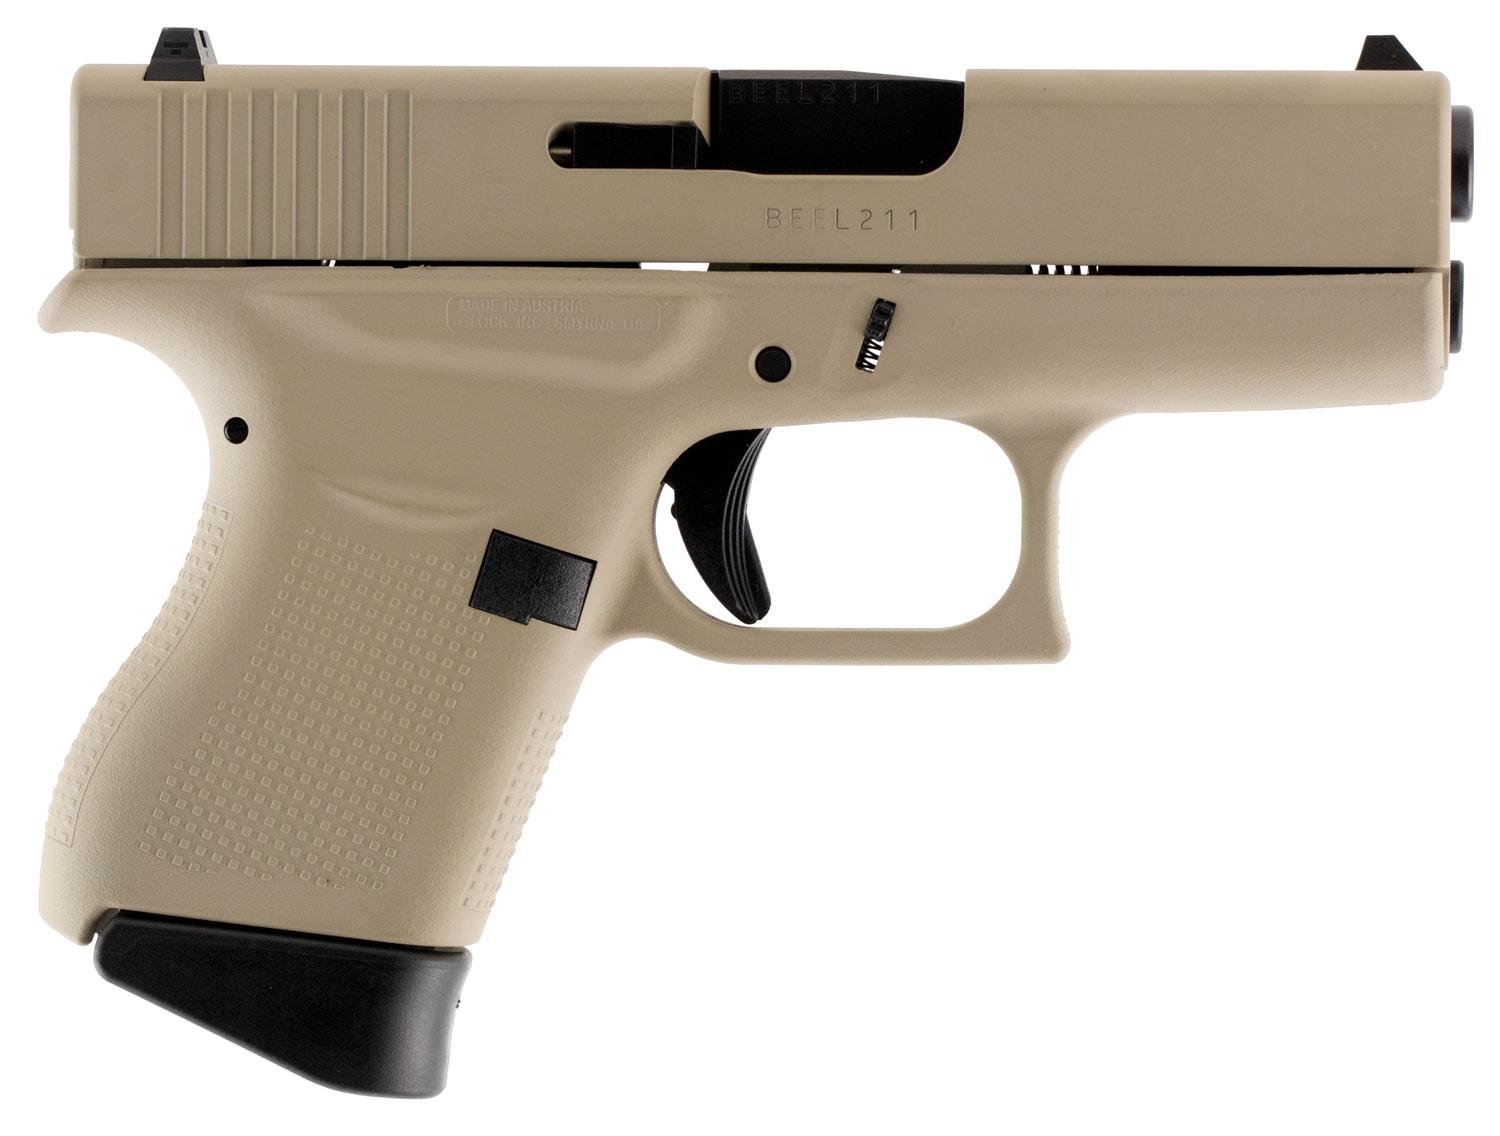 Glock G43 Pistol PI4350201DTN, 9mm Luger, 3.39", Desert Tan Polymer Grip/Frame, Desert Tan Cerakote Finish, 6 Rds